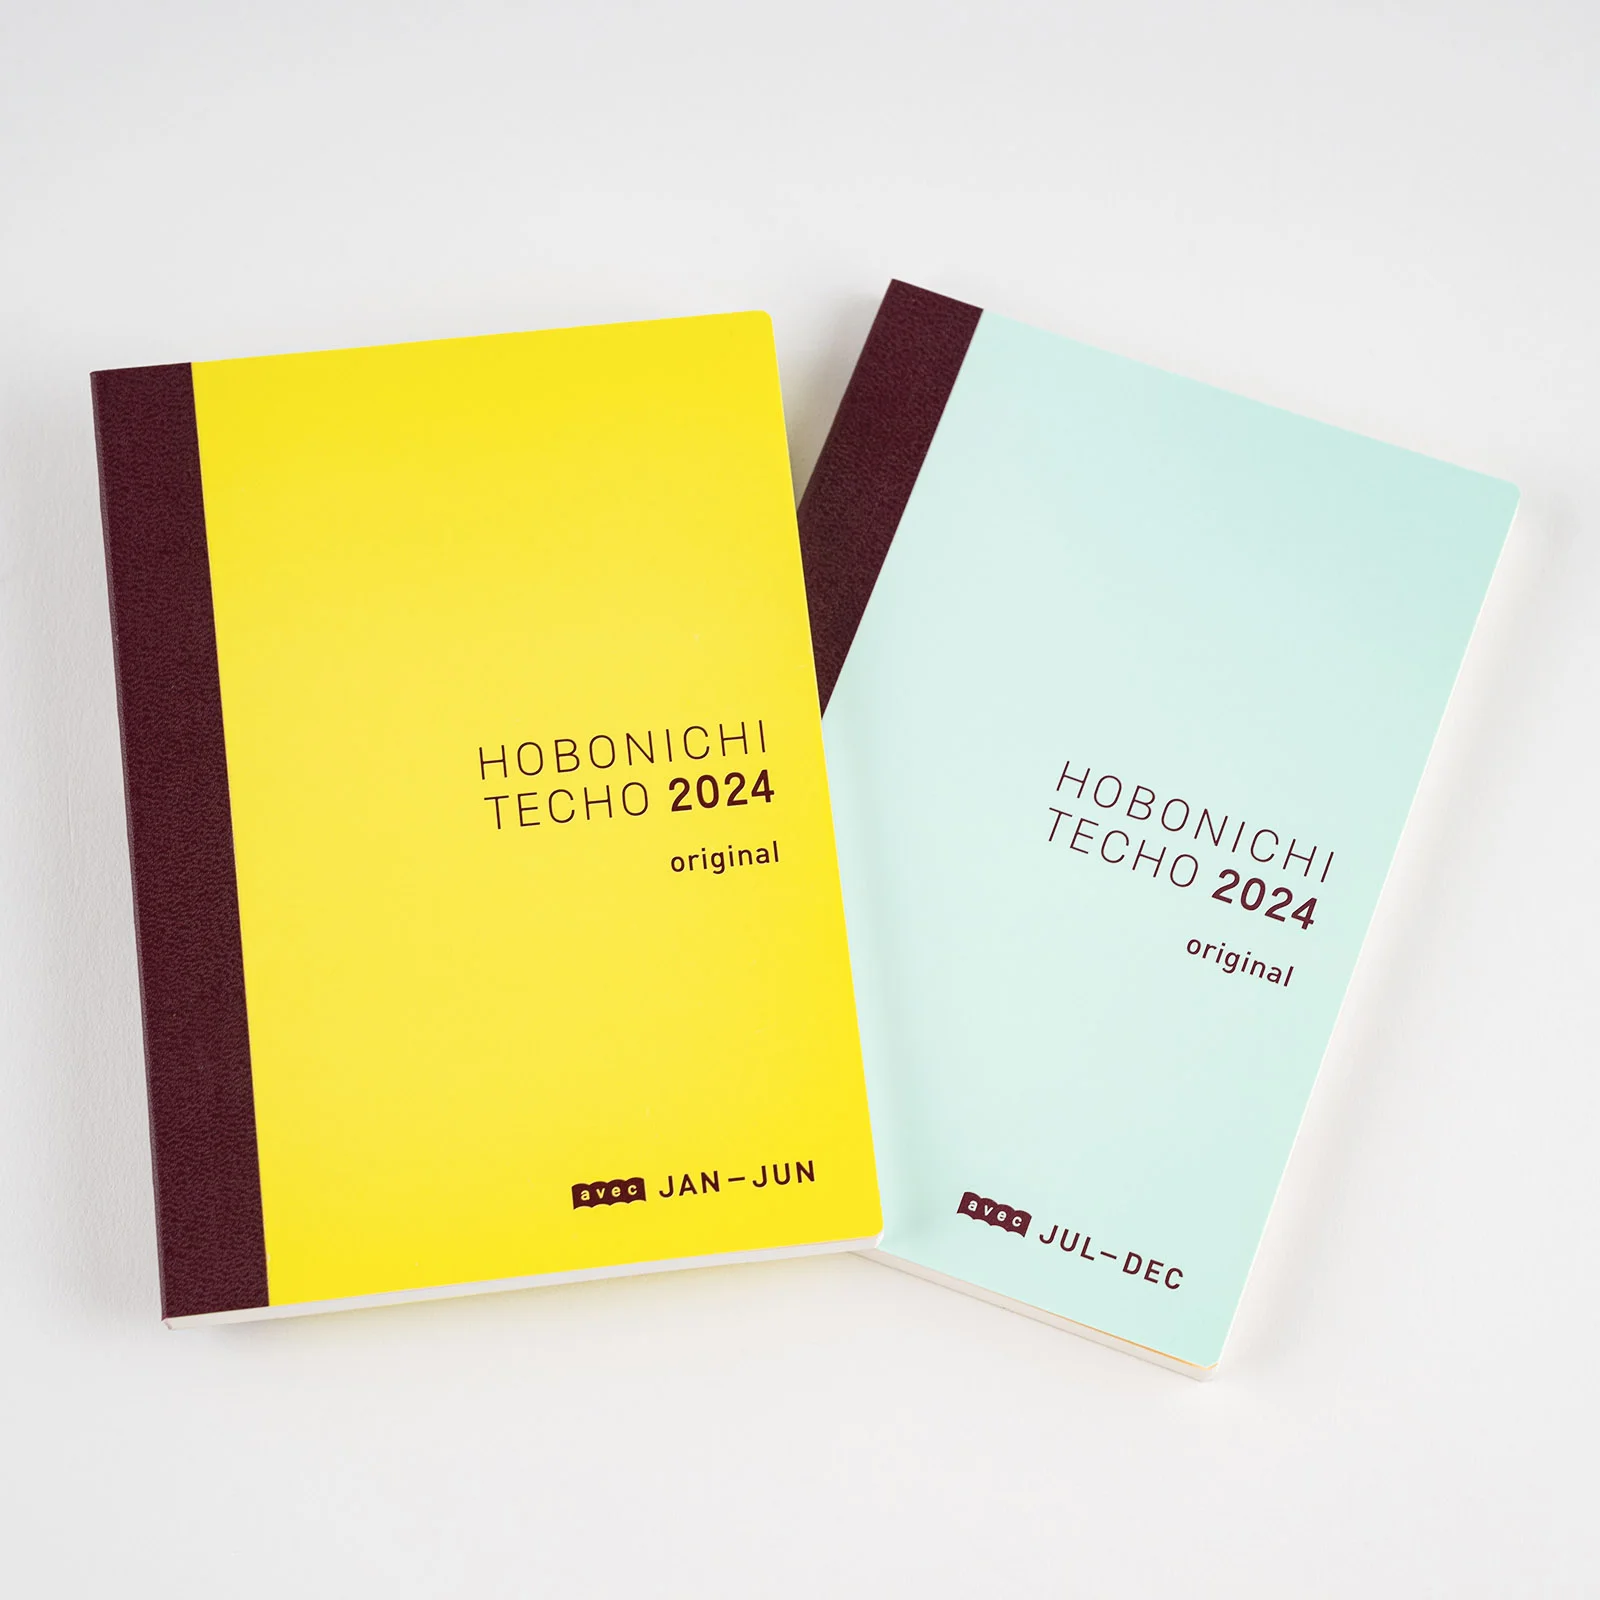 Original / HON - Hobonichi Techo Book Buying Guide